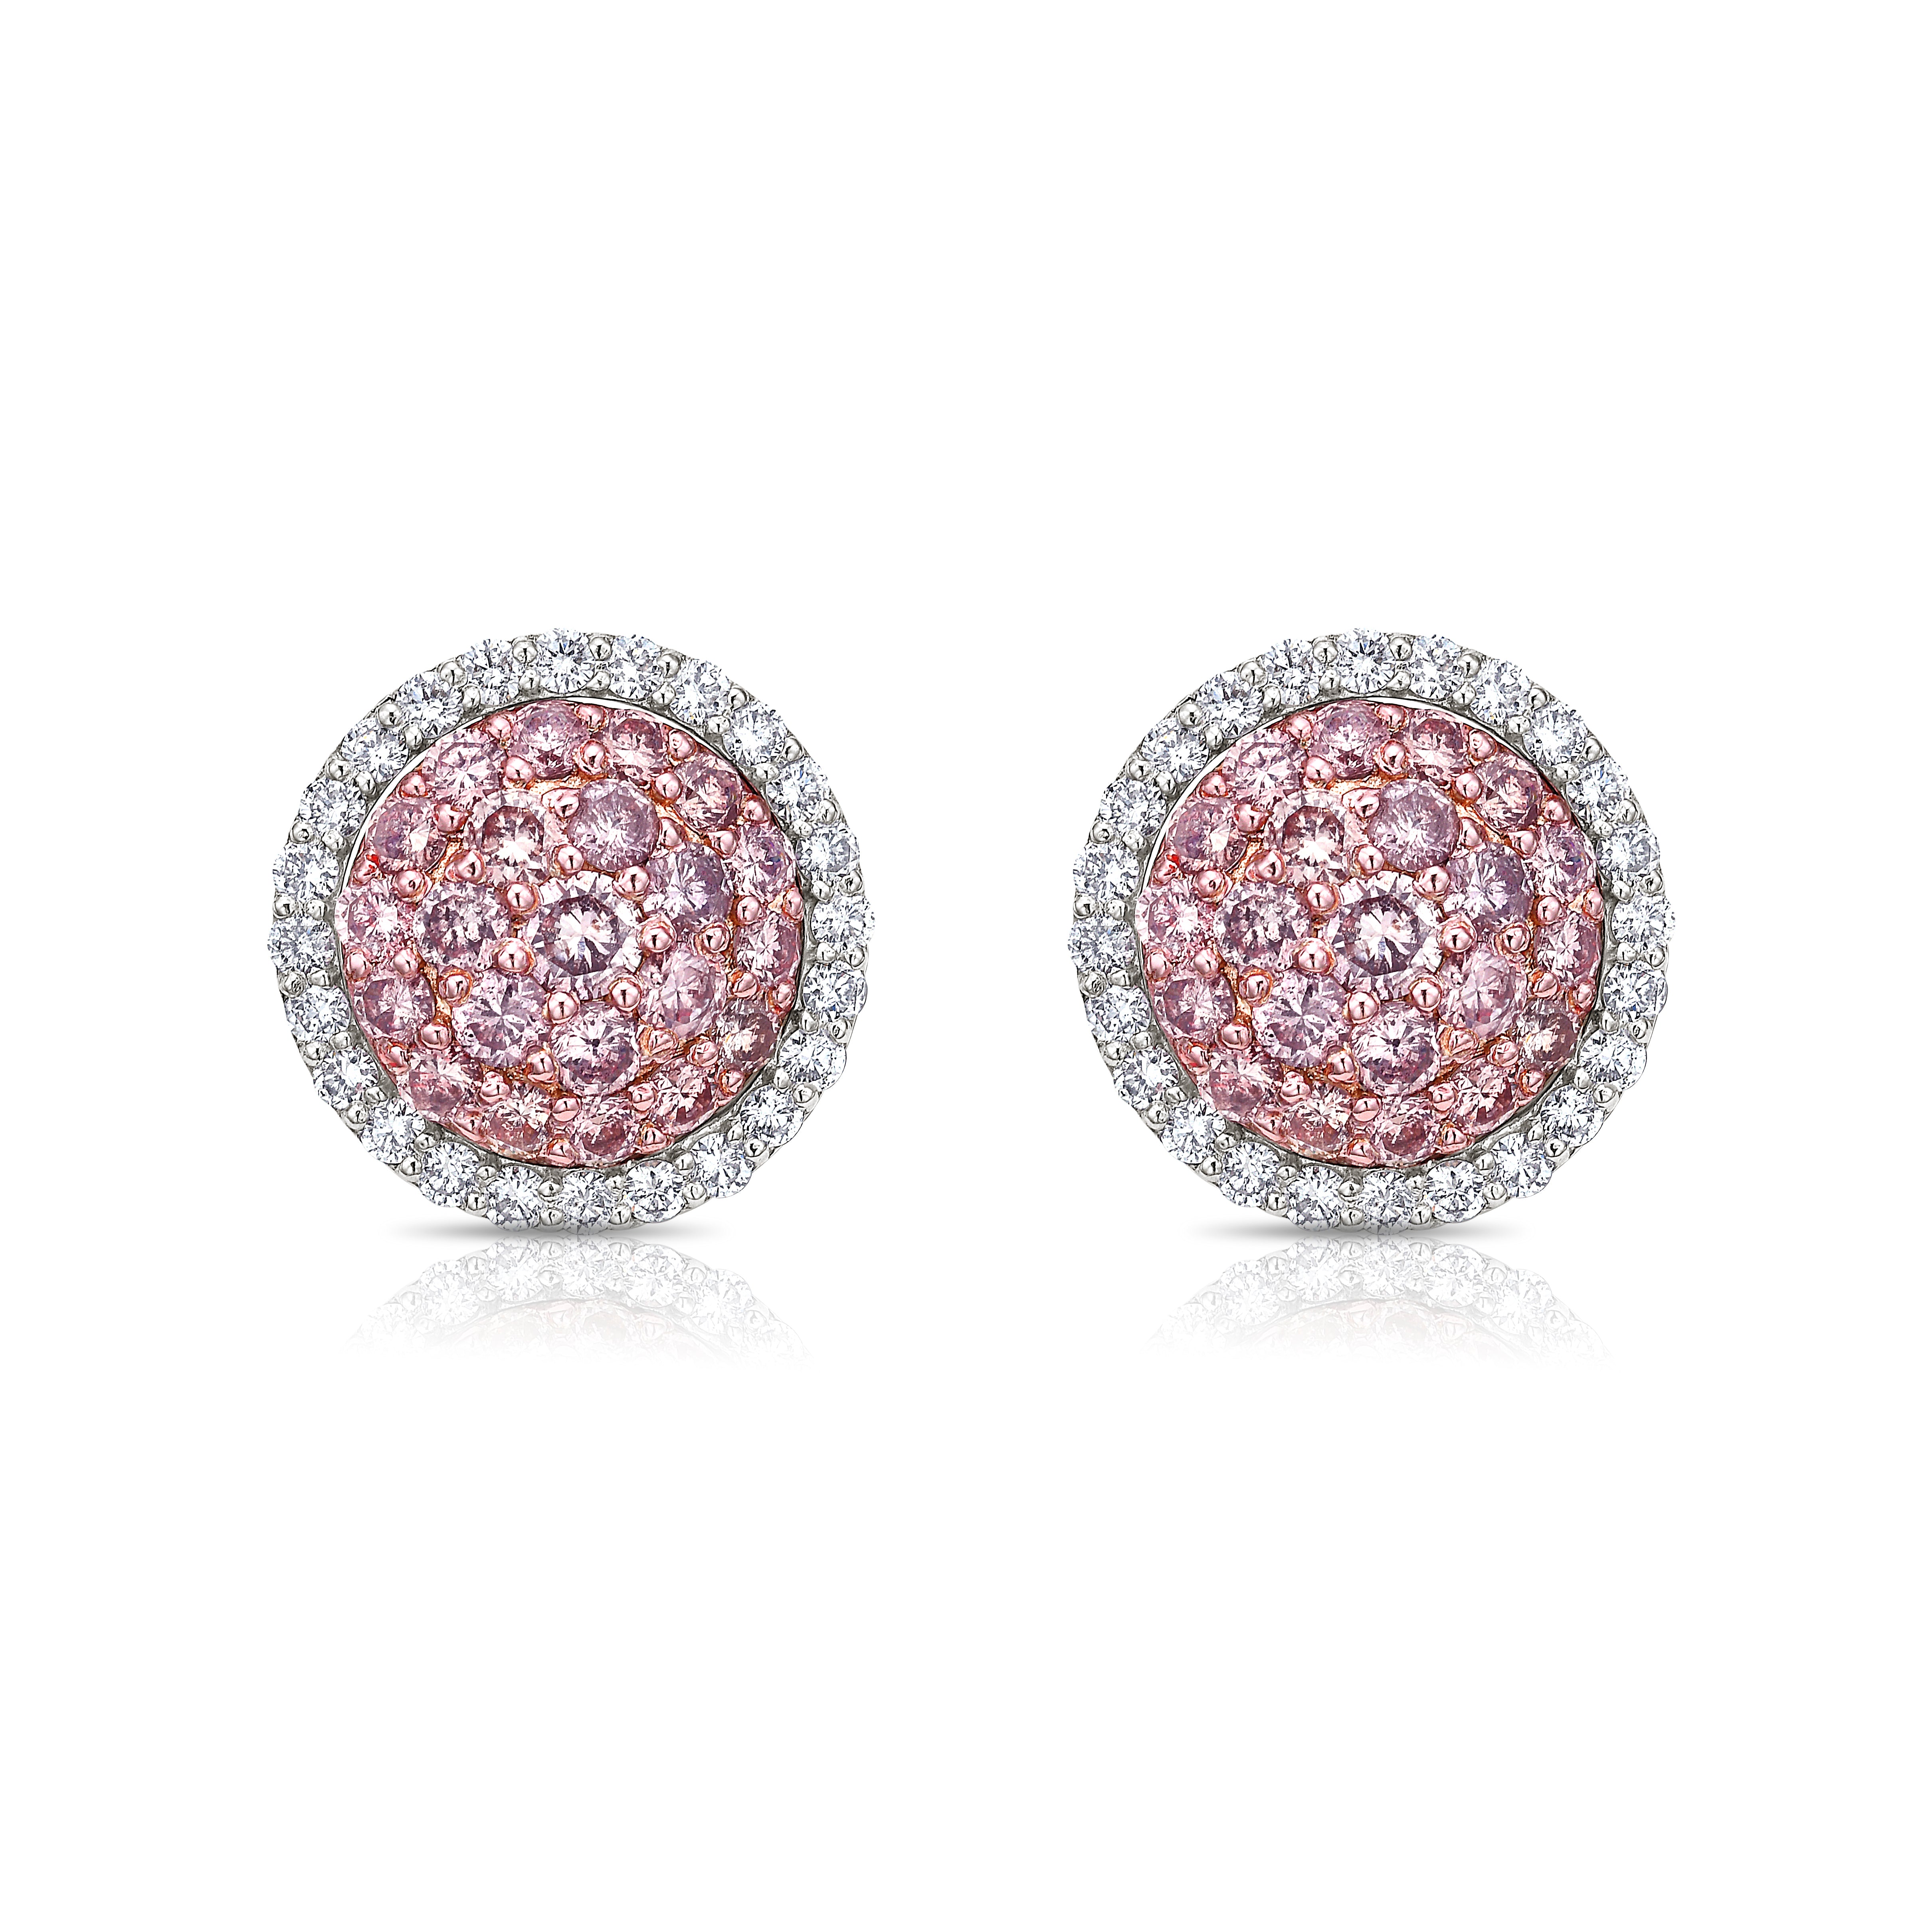 Pink Diamond Jewelry - Natural Pink Diamond Jewelry – Rare Colors